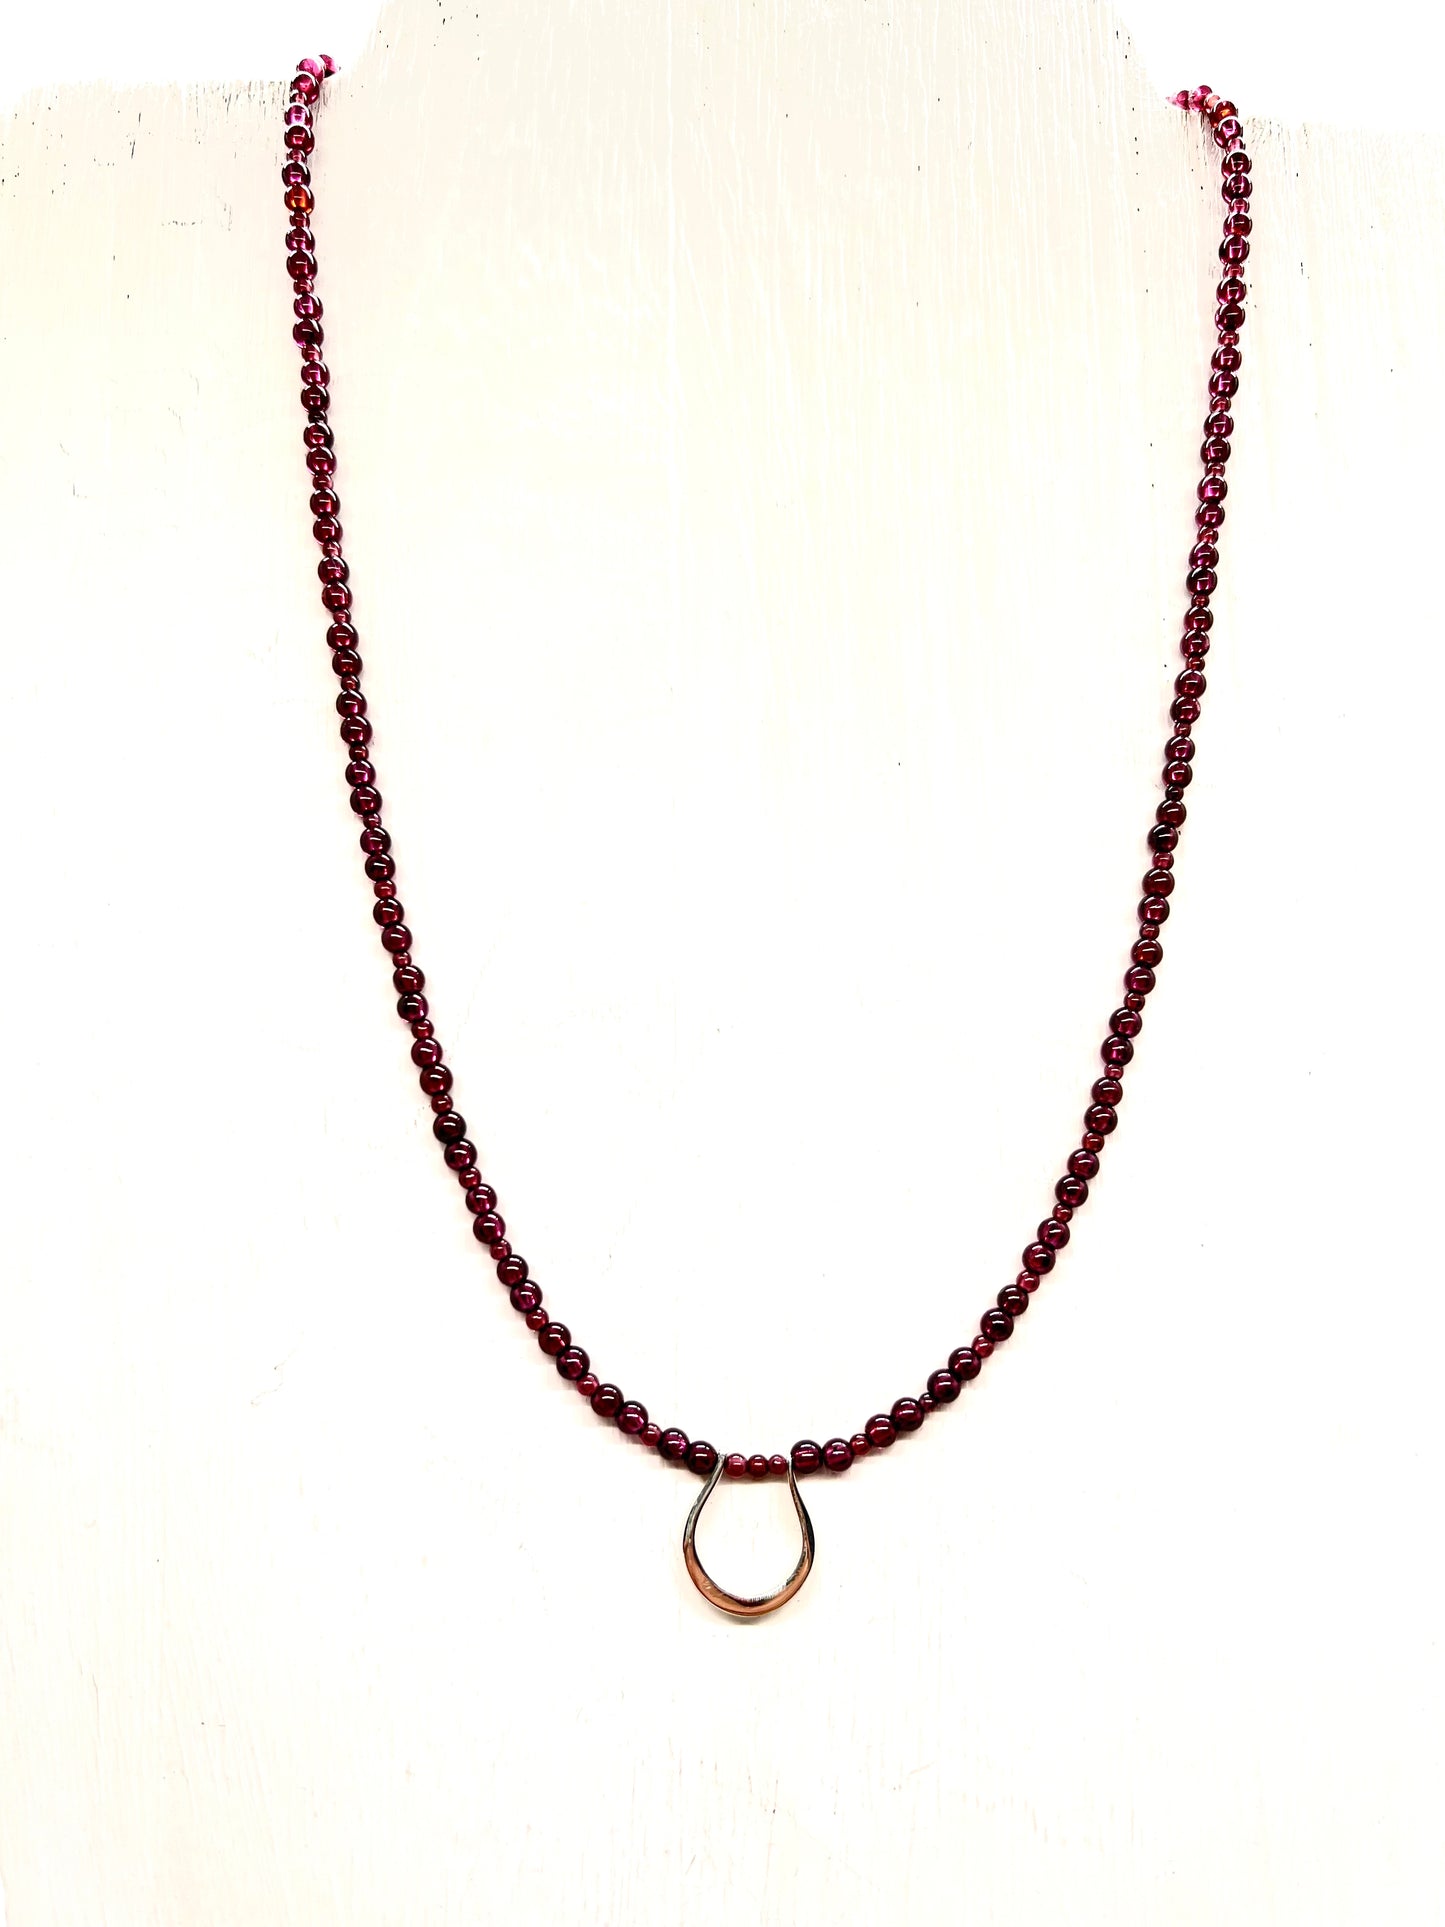 Horseshoe Pendant Necklace with Garnet